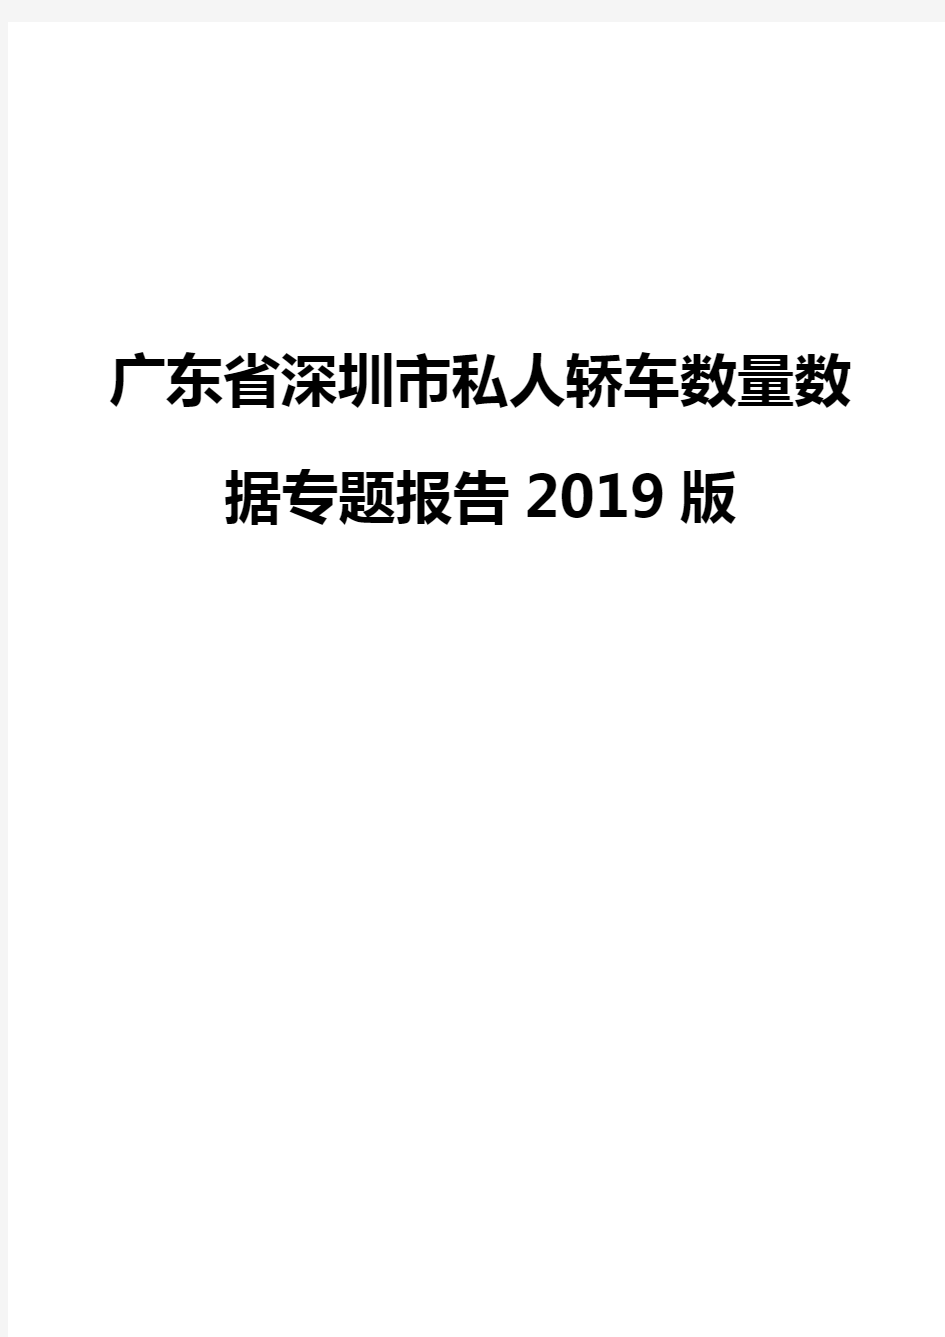 广东省深圳市私人轿车数量数据专题报告2019版